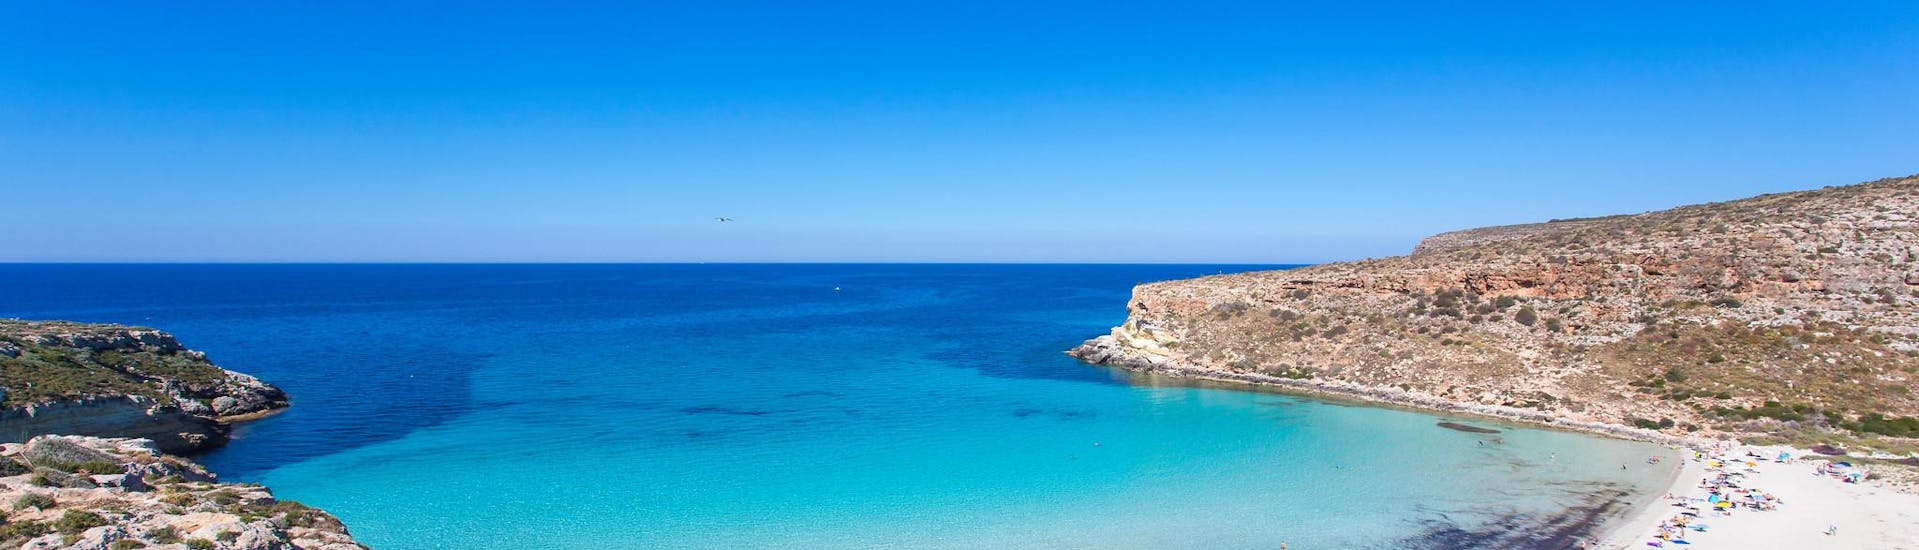 Een van de mooiste en beroemdste stranden van Marsala op Sicilië.